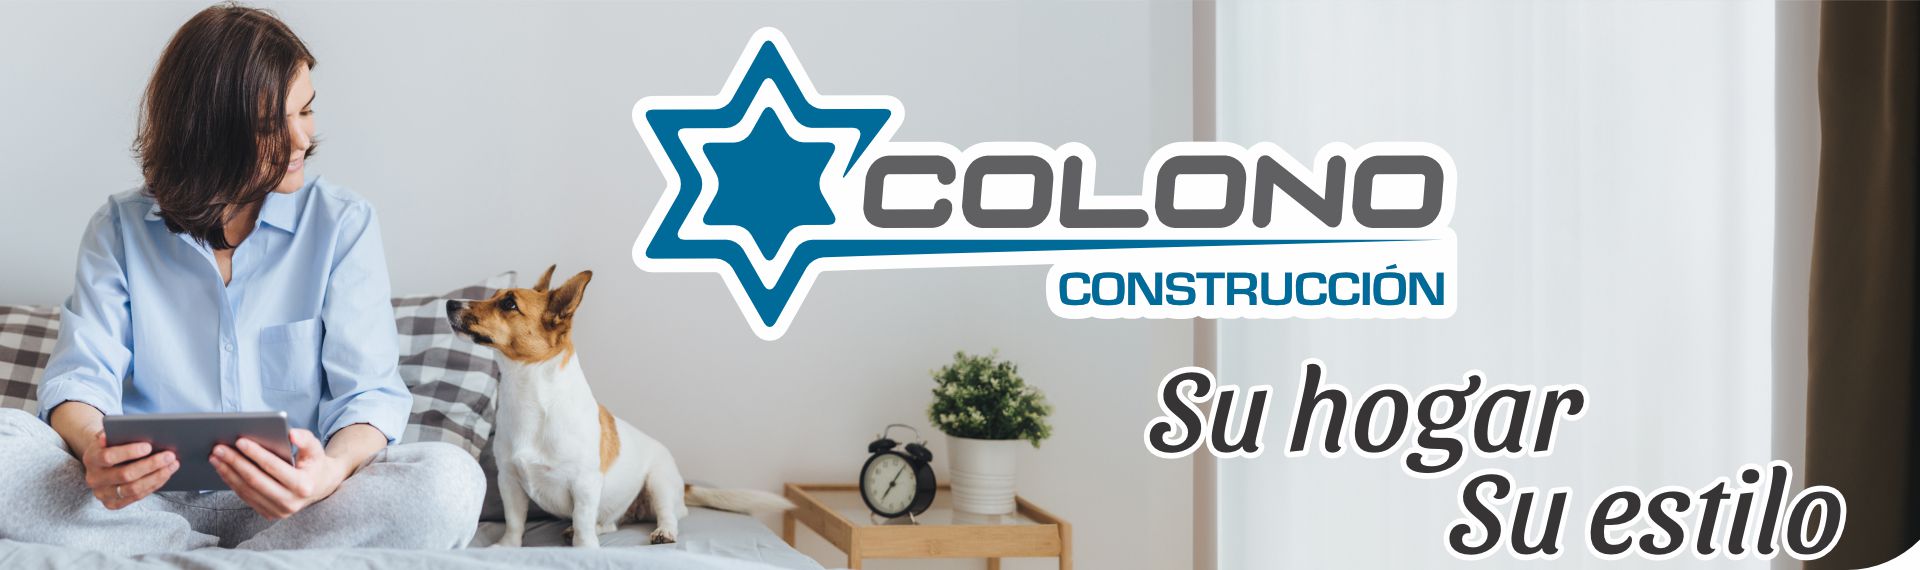 Colono Construccion - LIJADORA VIBRACIÓN 1/4 240W UPS2508/2408